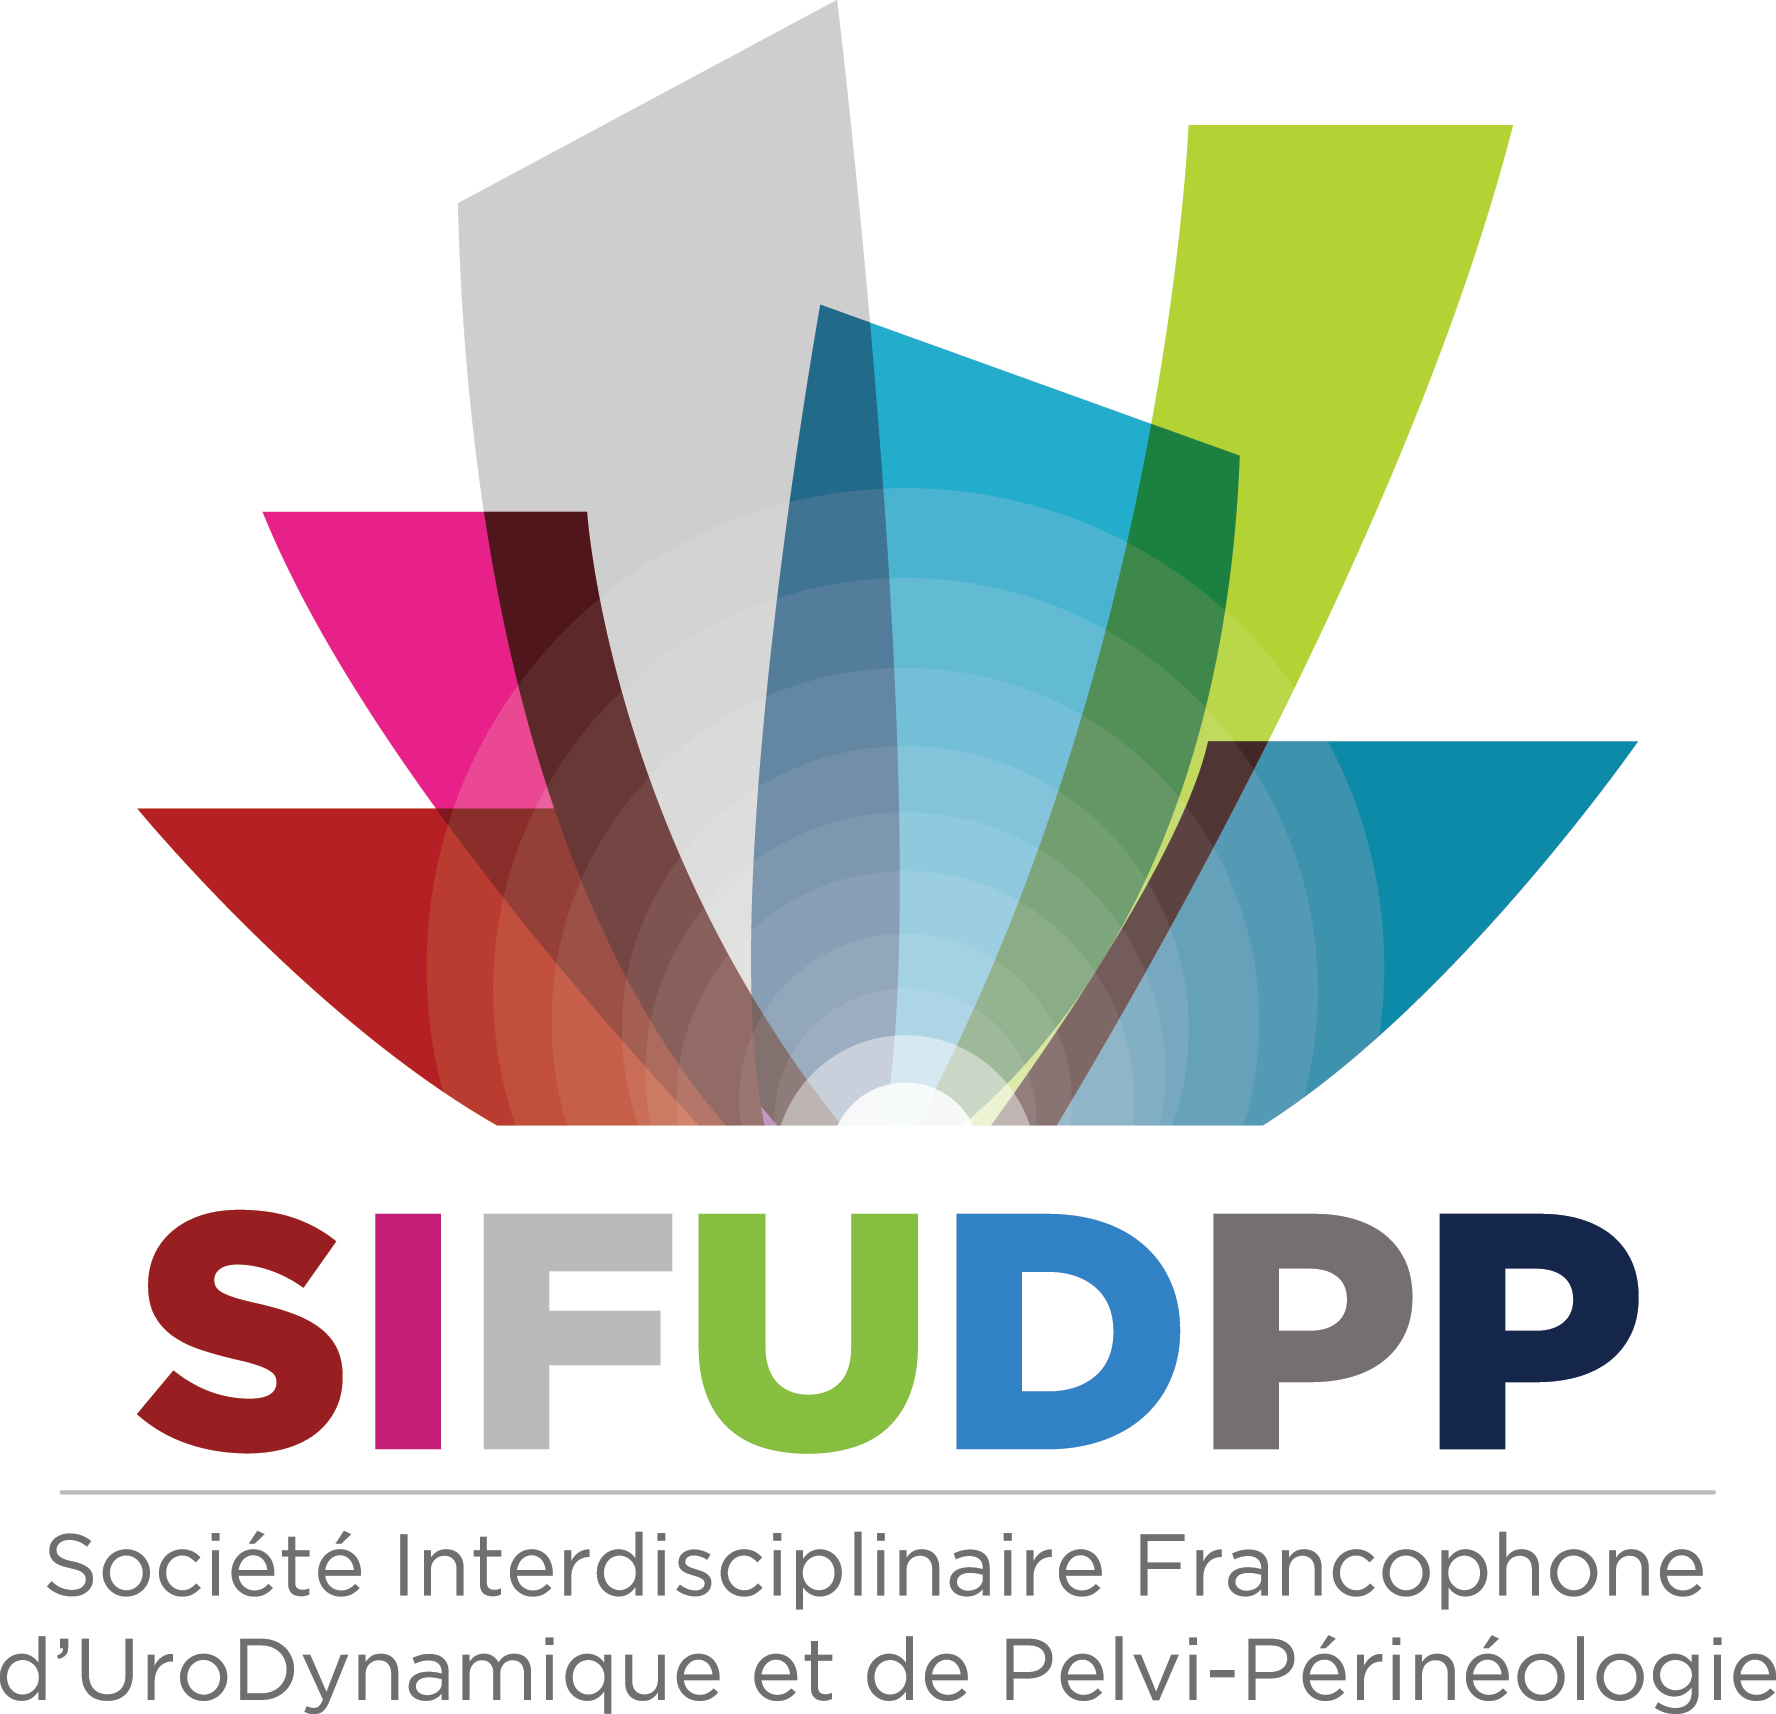 SIFUD-PP Paris 2016 : Quelle chirurgie sur un urètre déjà opéré ?